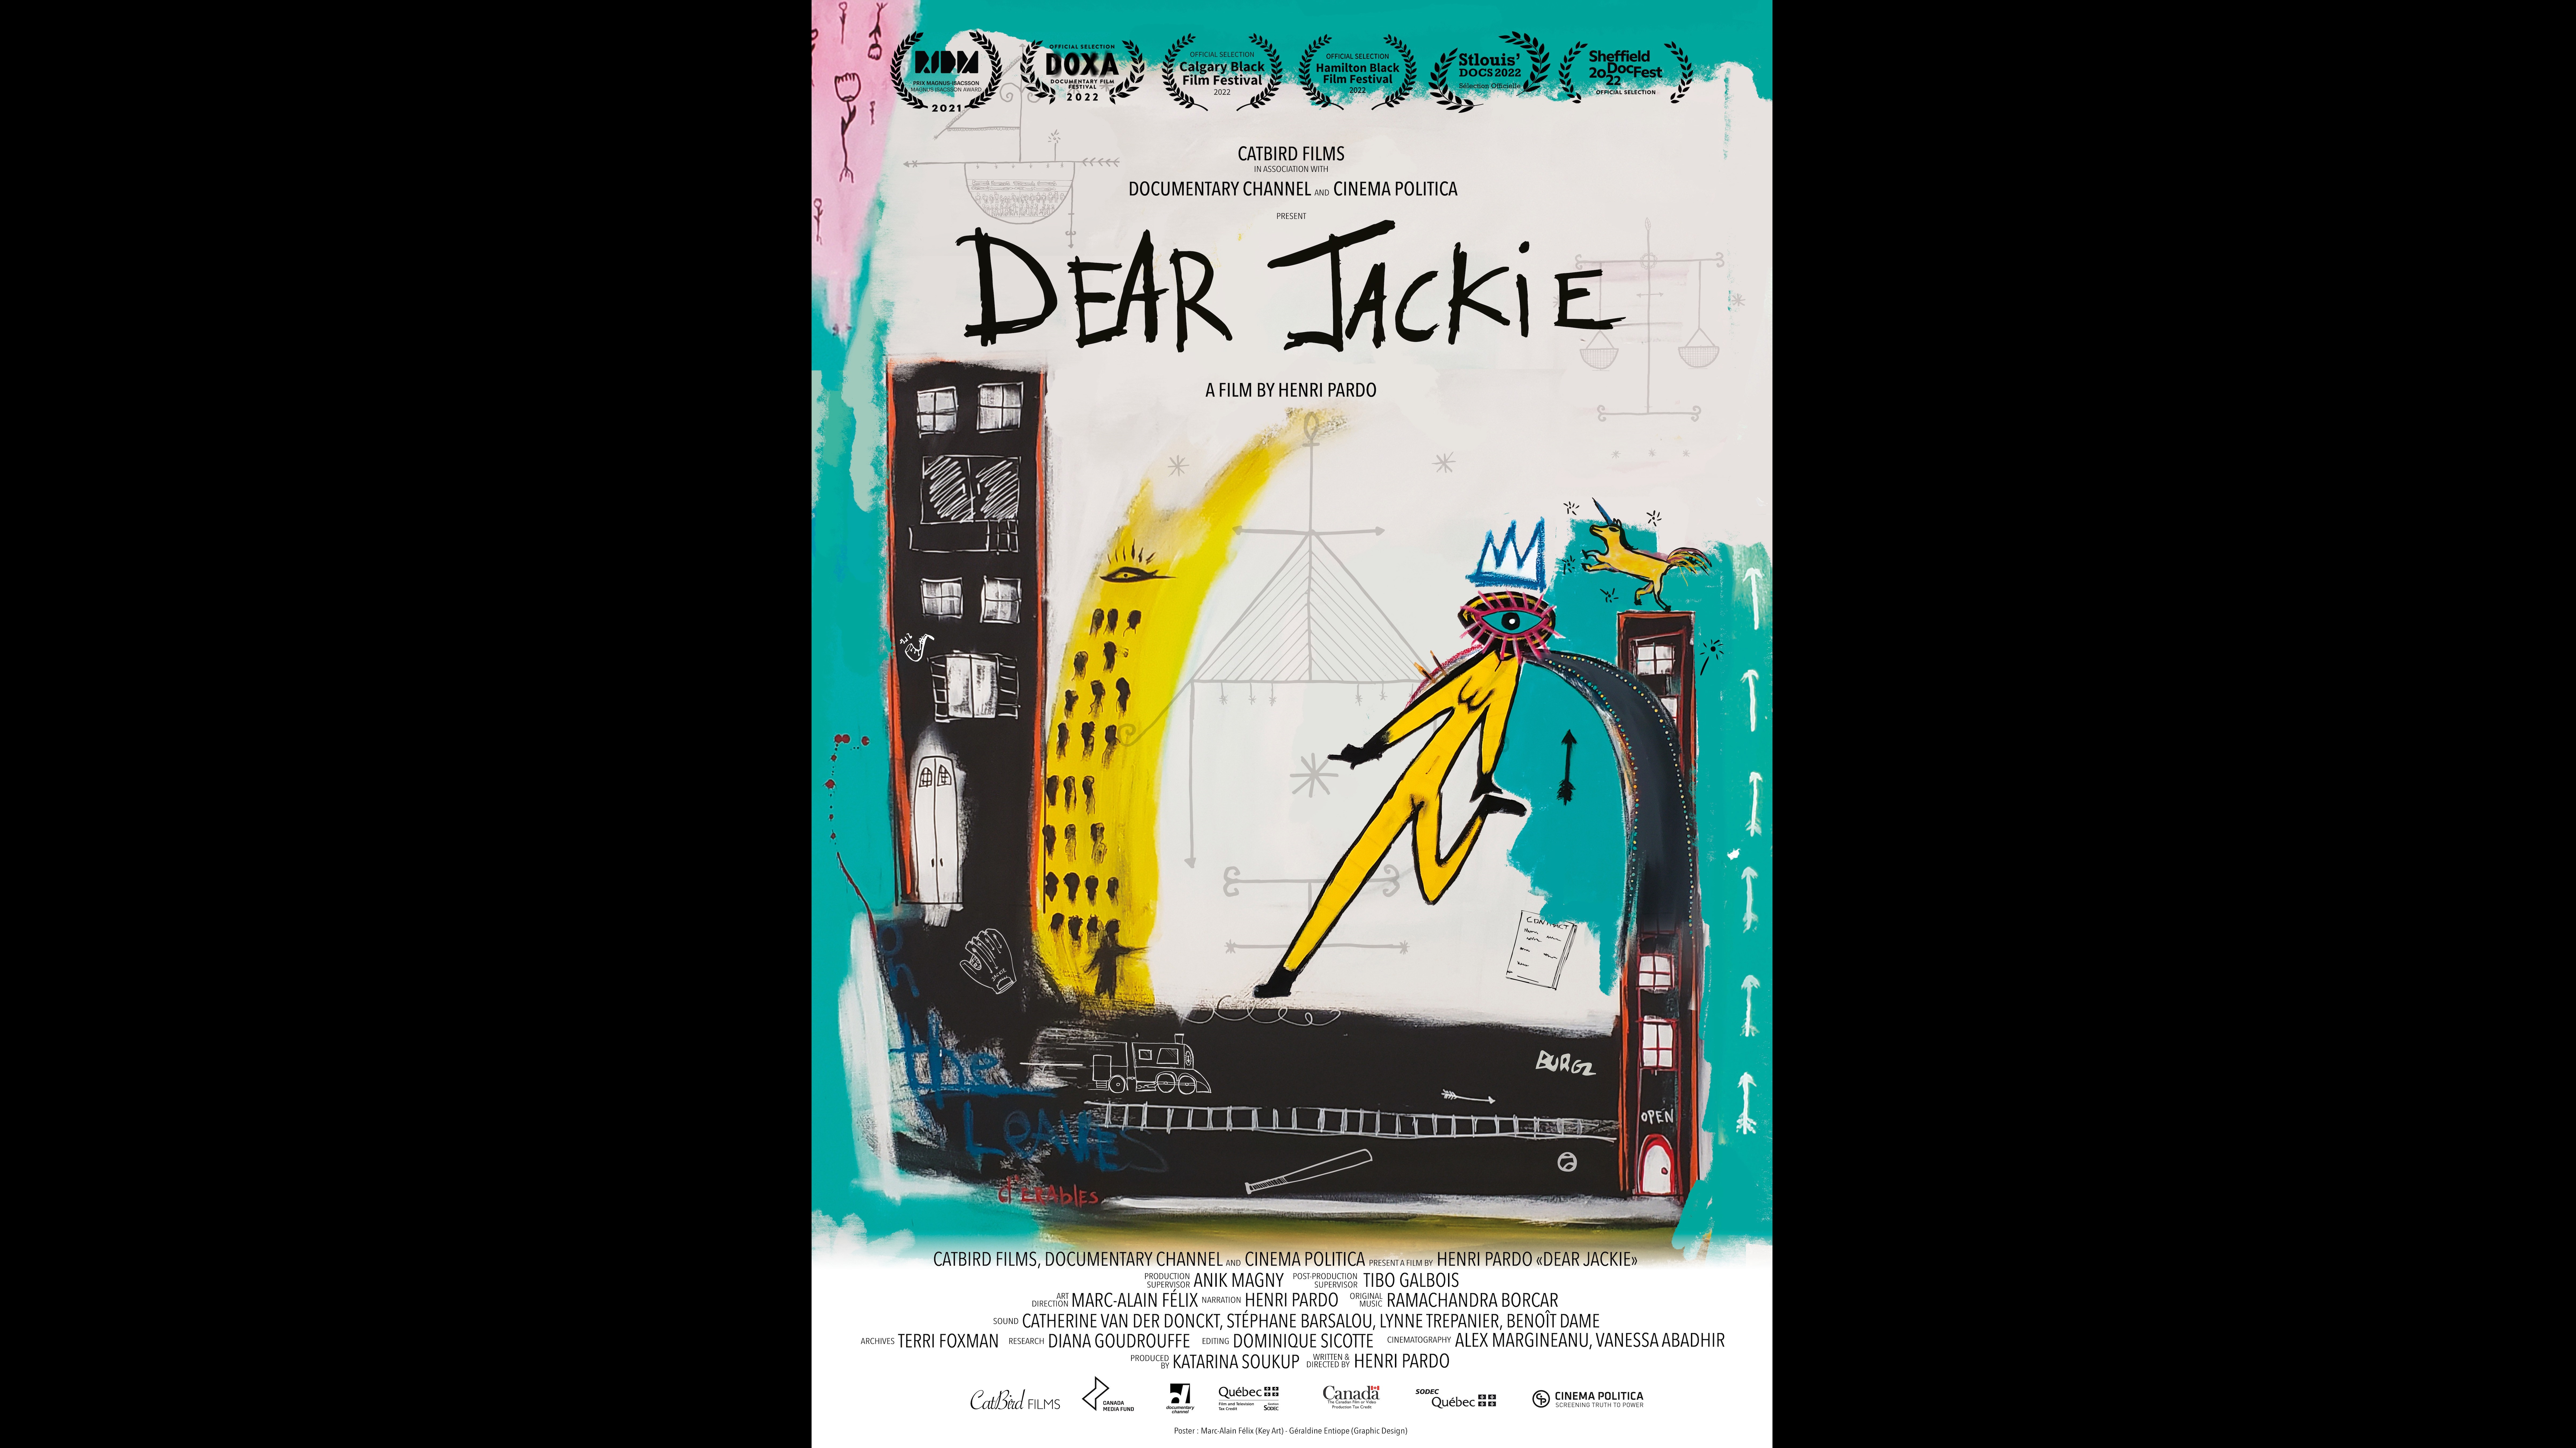 DearJackie_Poster-ENG_3600x5400